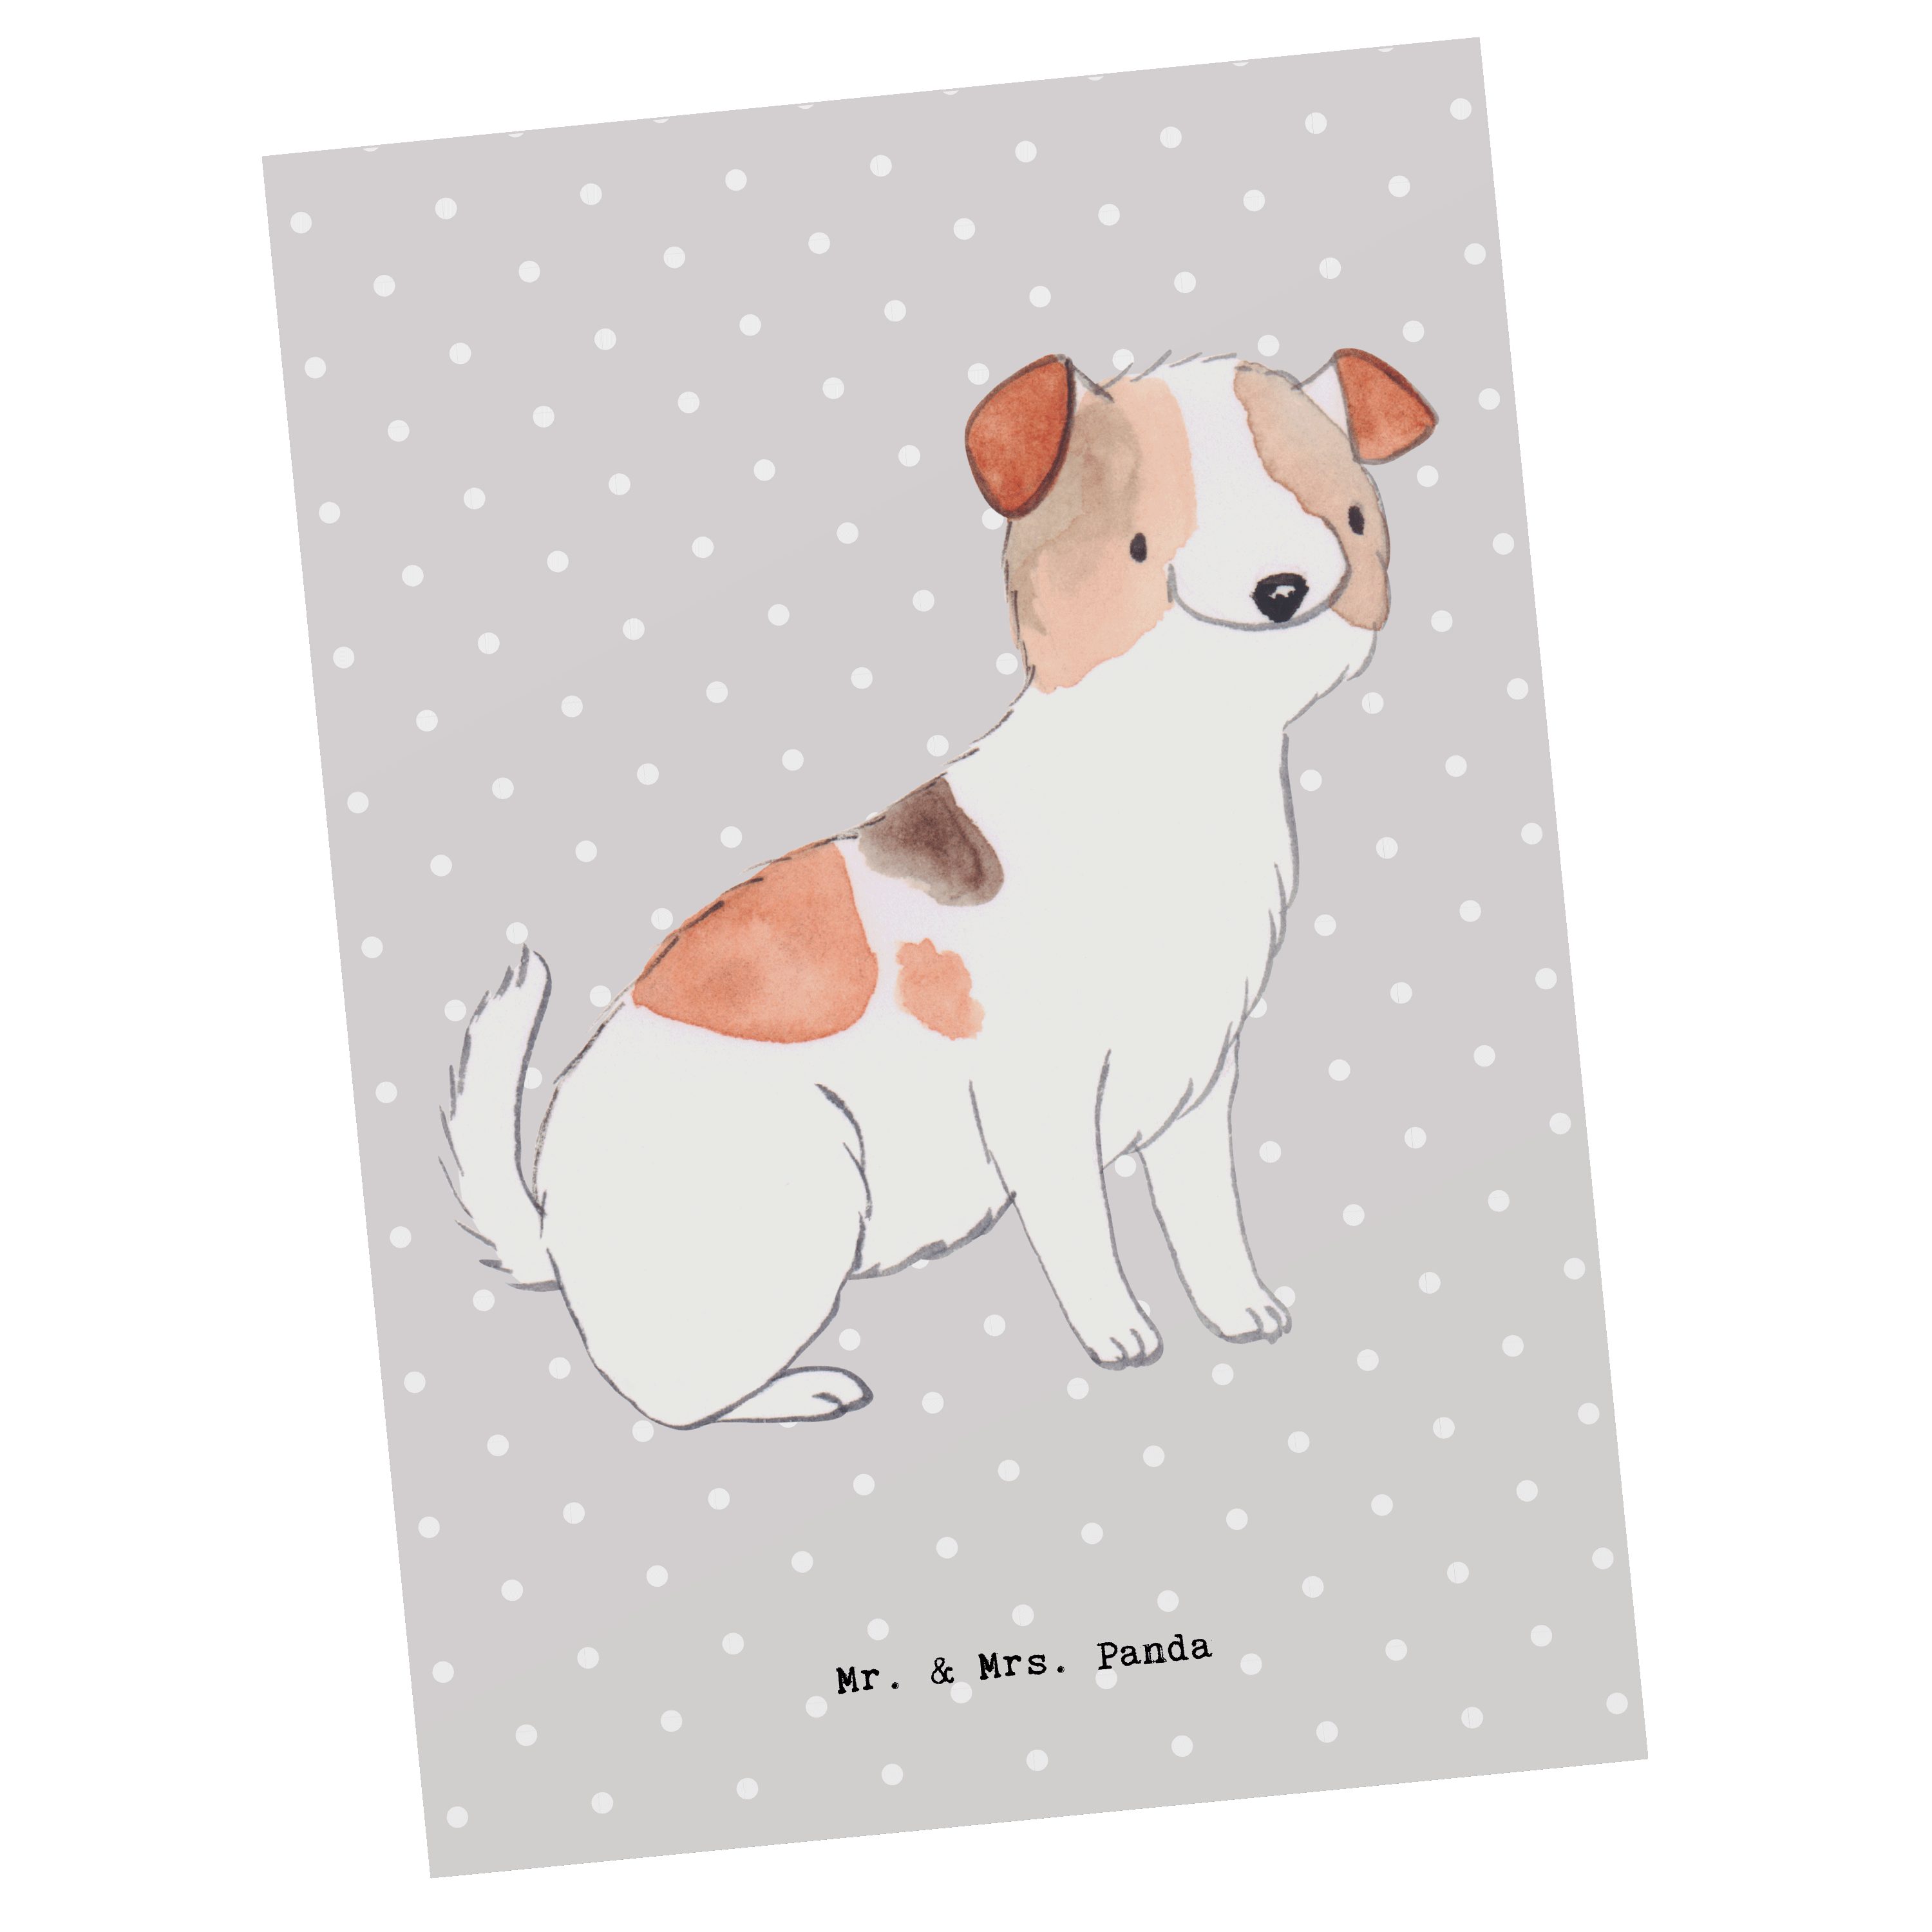 Mr. & Mrs. Panda Postkarte Jack Russell Terrier Moment - Grau Pastell - Geschenk, Einladung, Ges